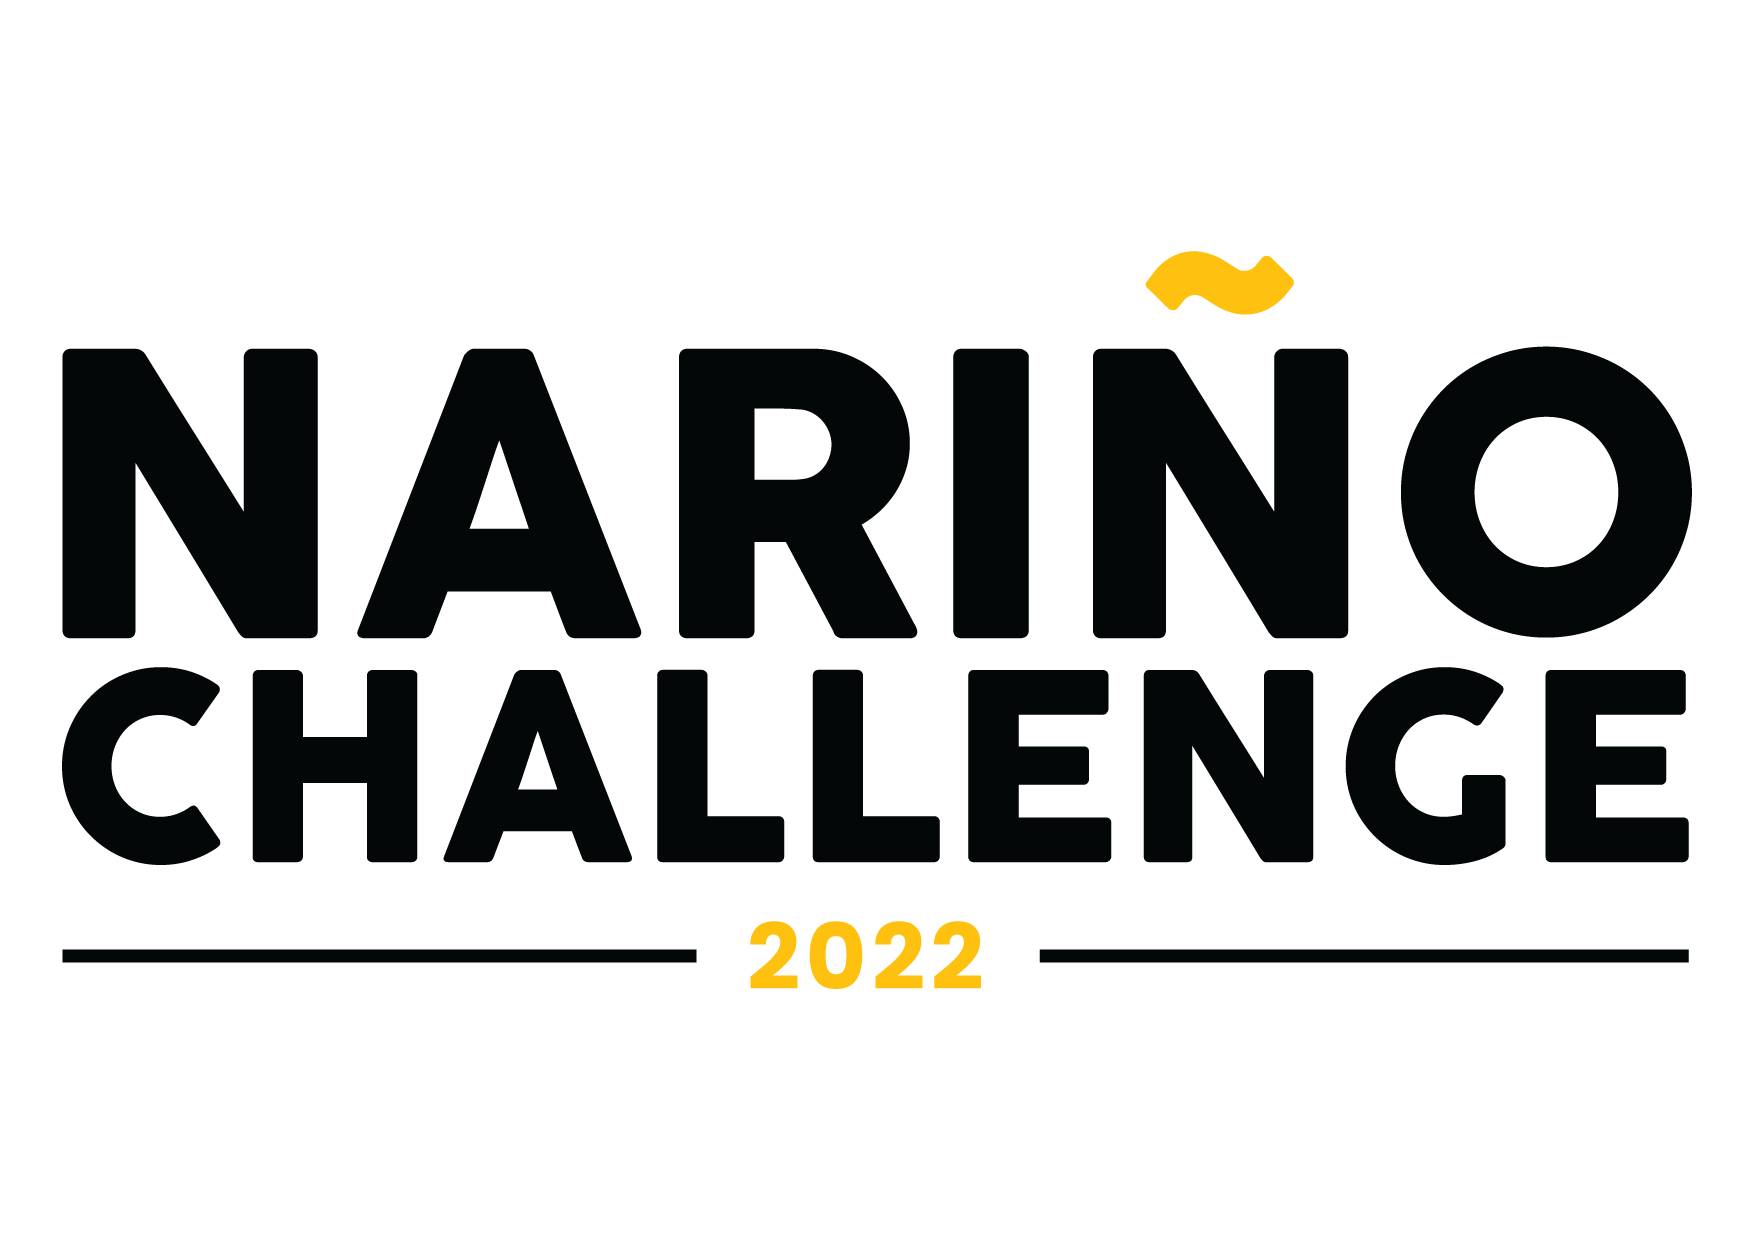 The Narino Challenge